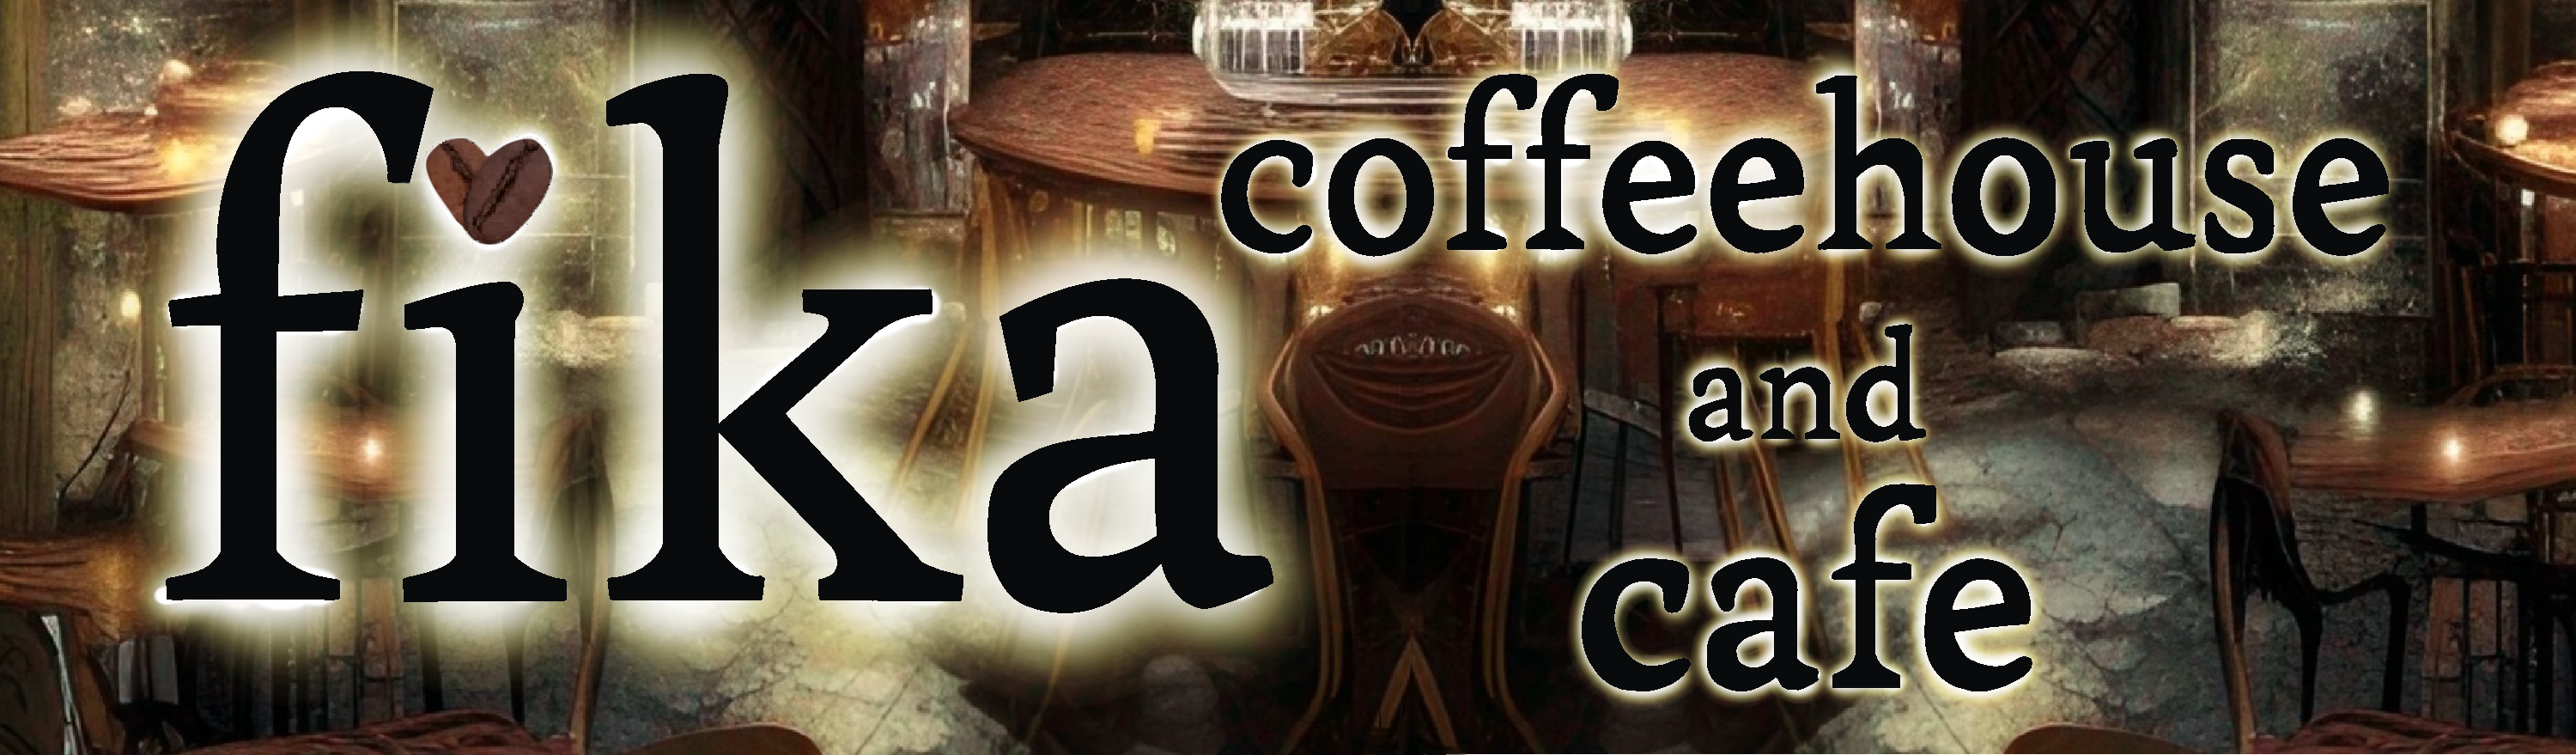 fika coffeehouse & cafe